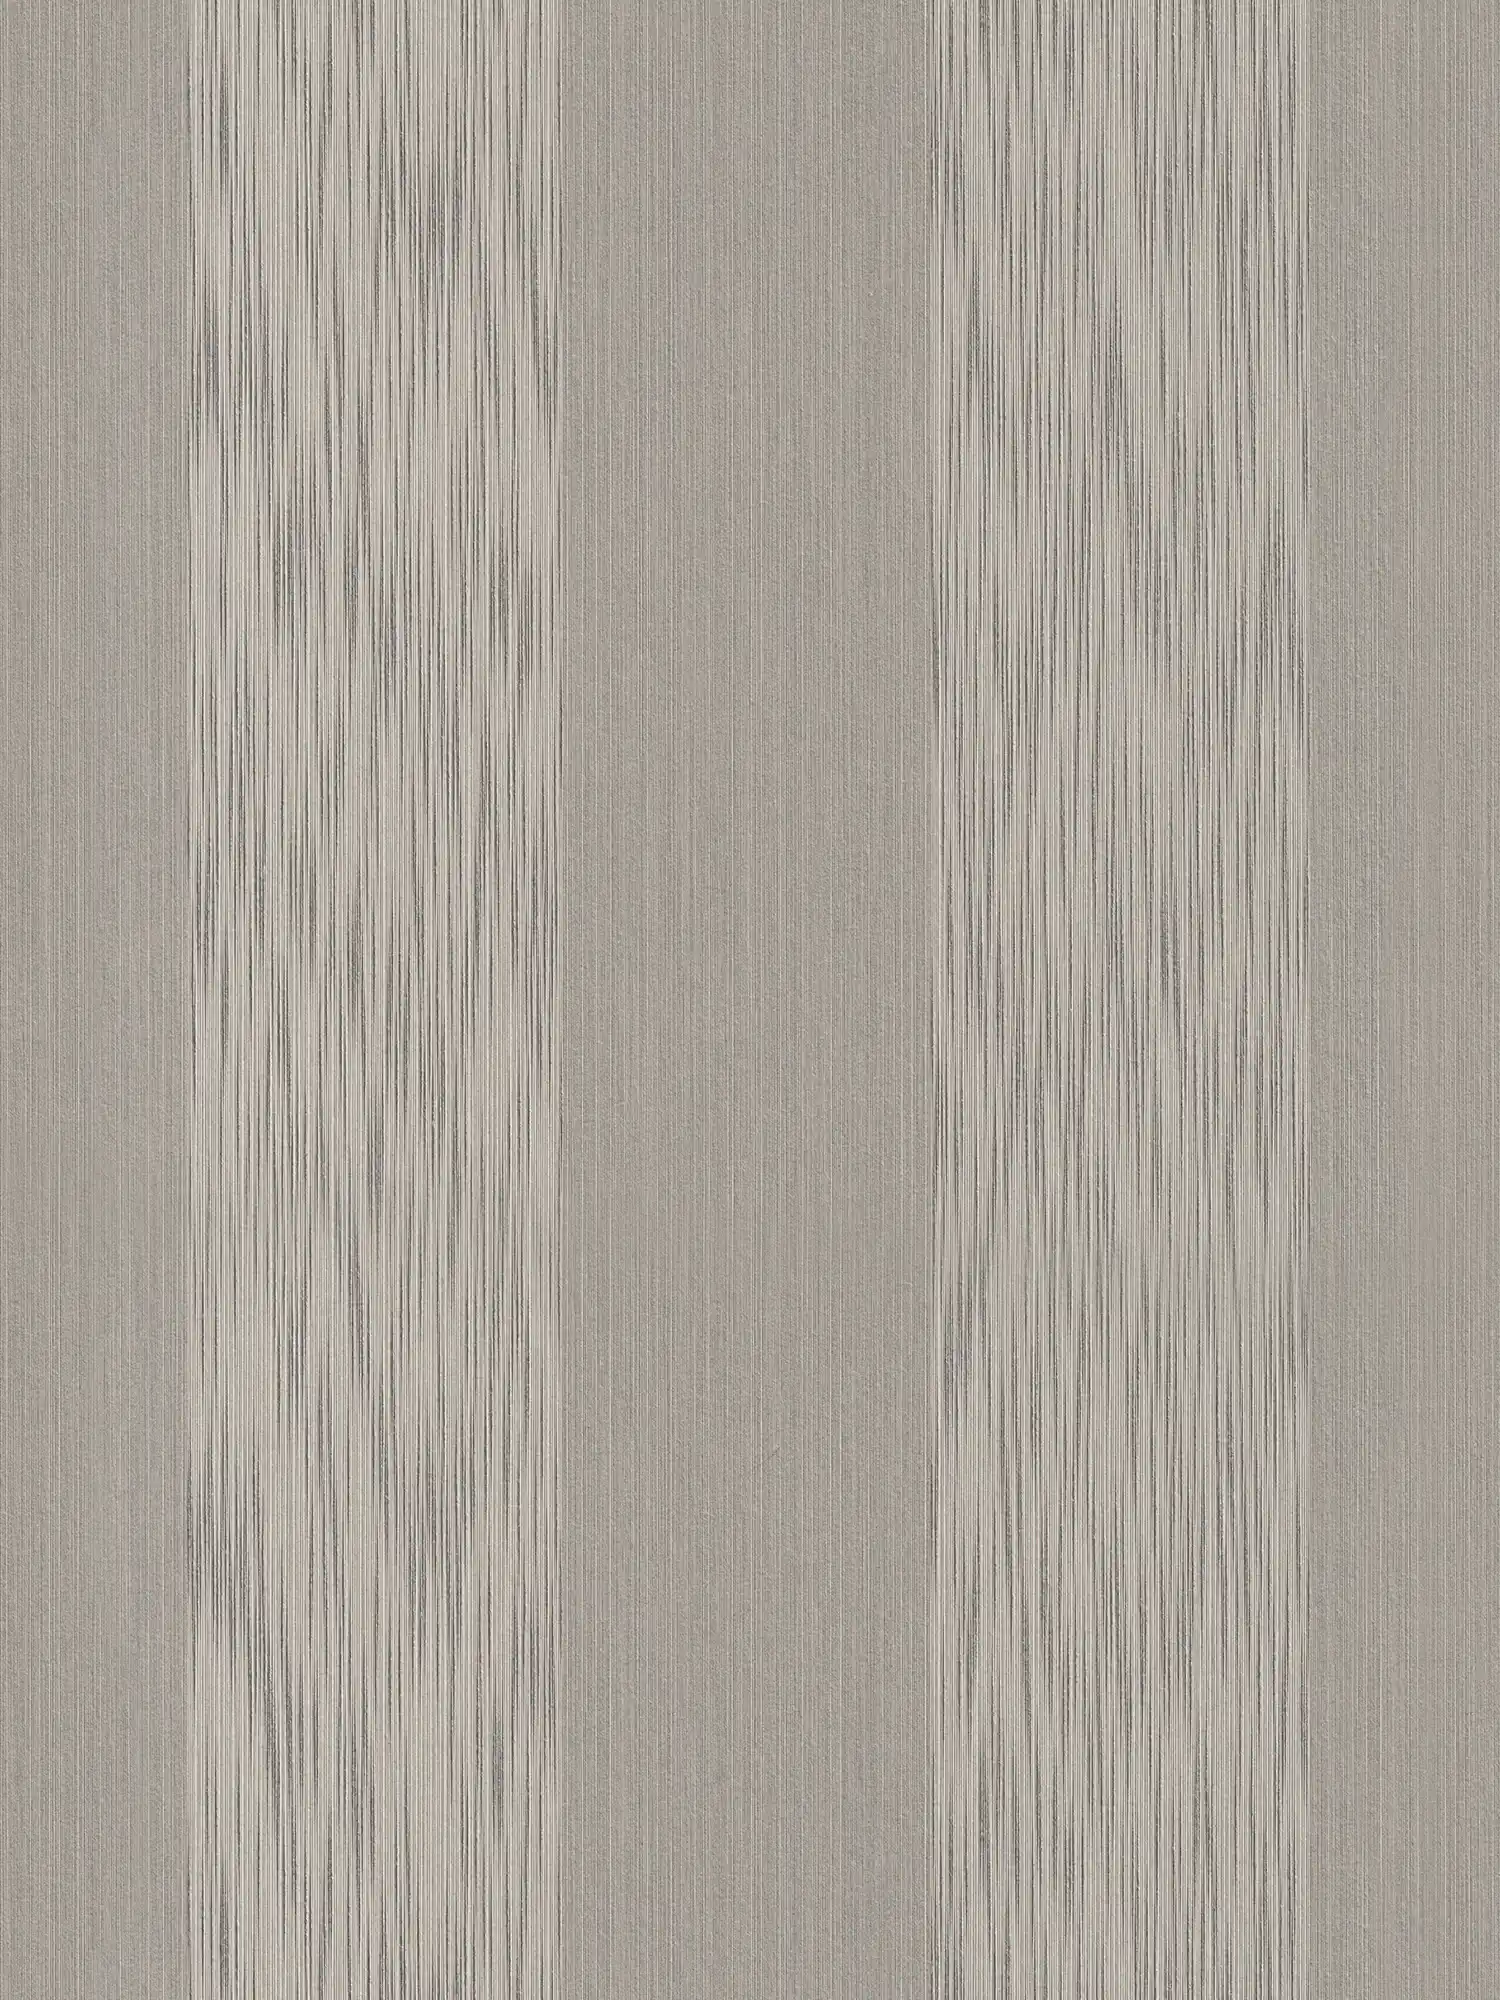 Papel pintado de rayas melange con efecto de textura - gris
